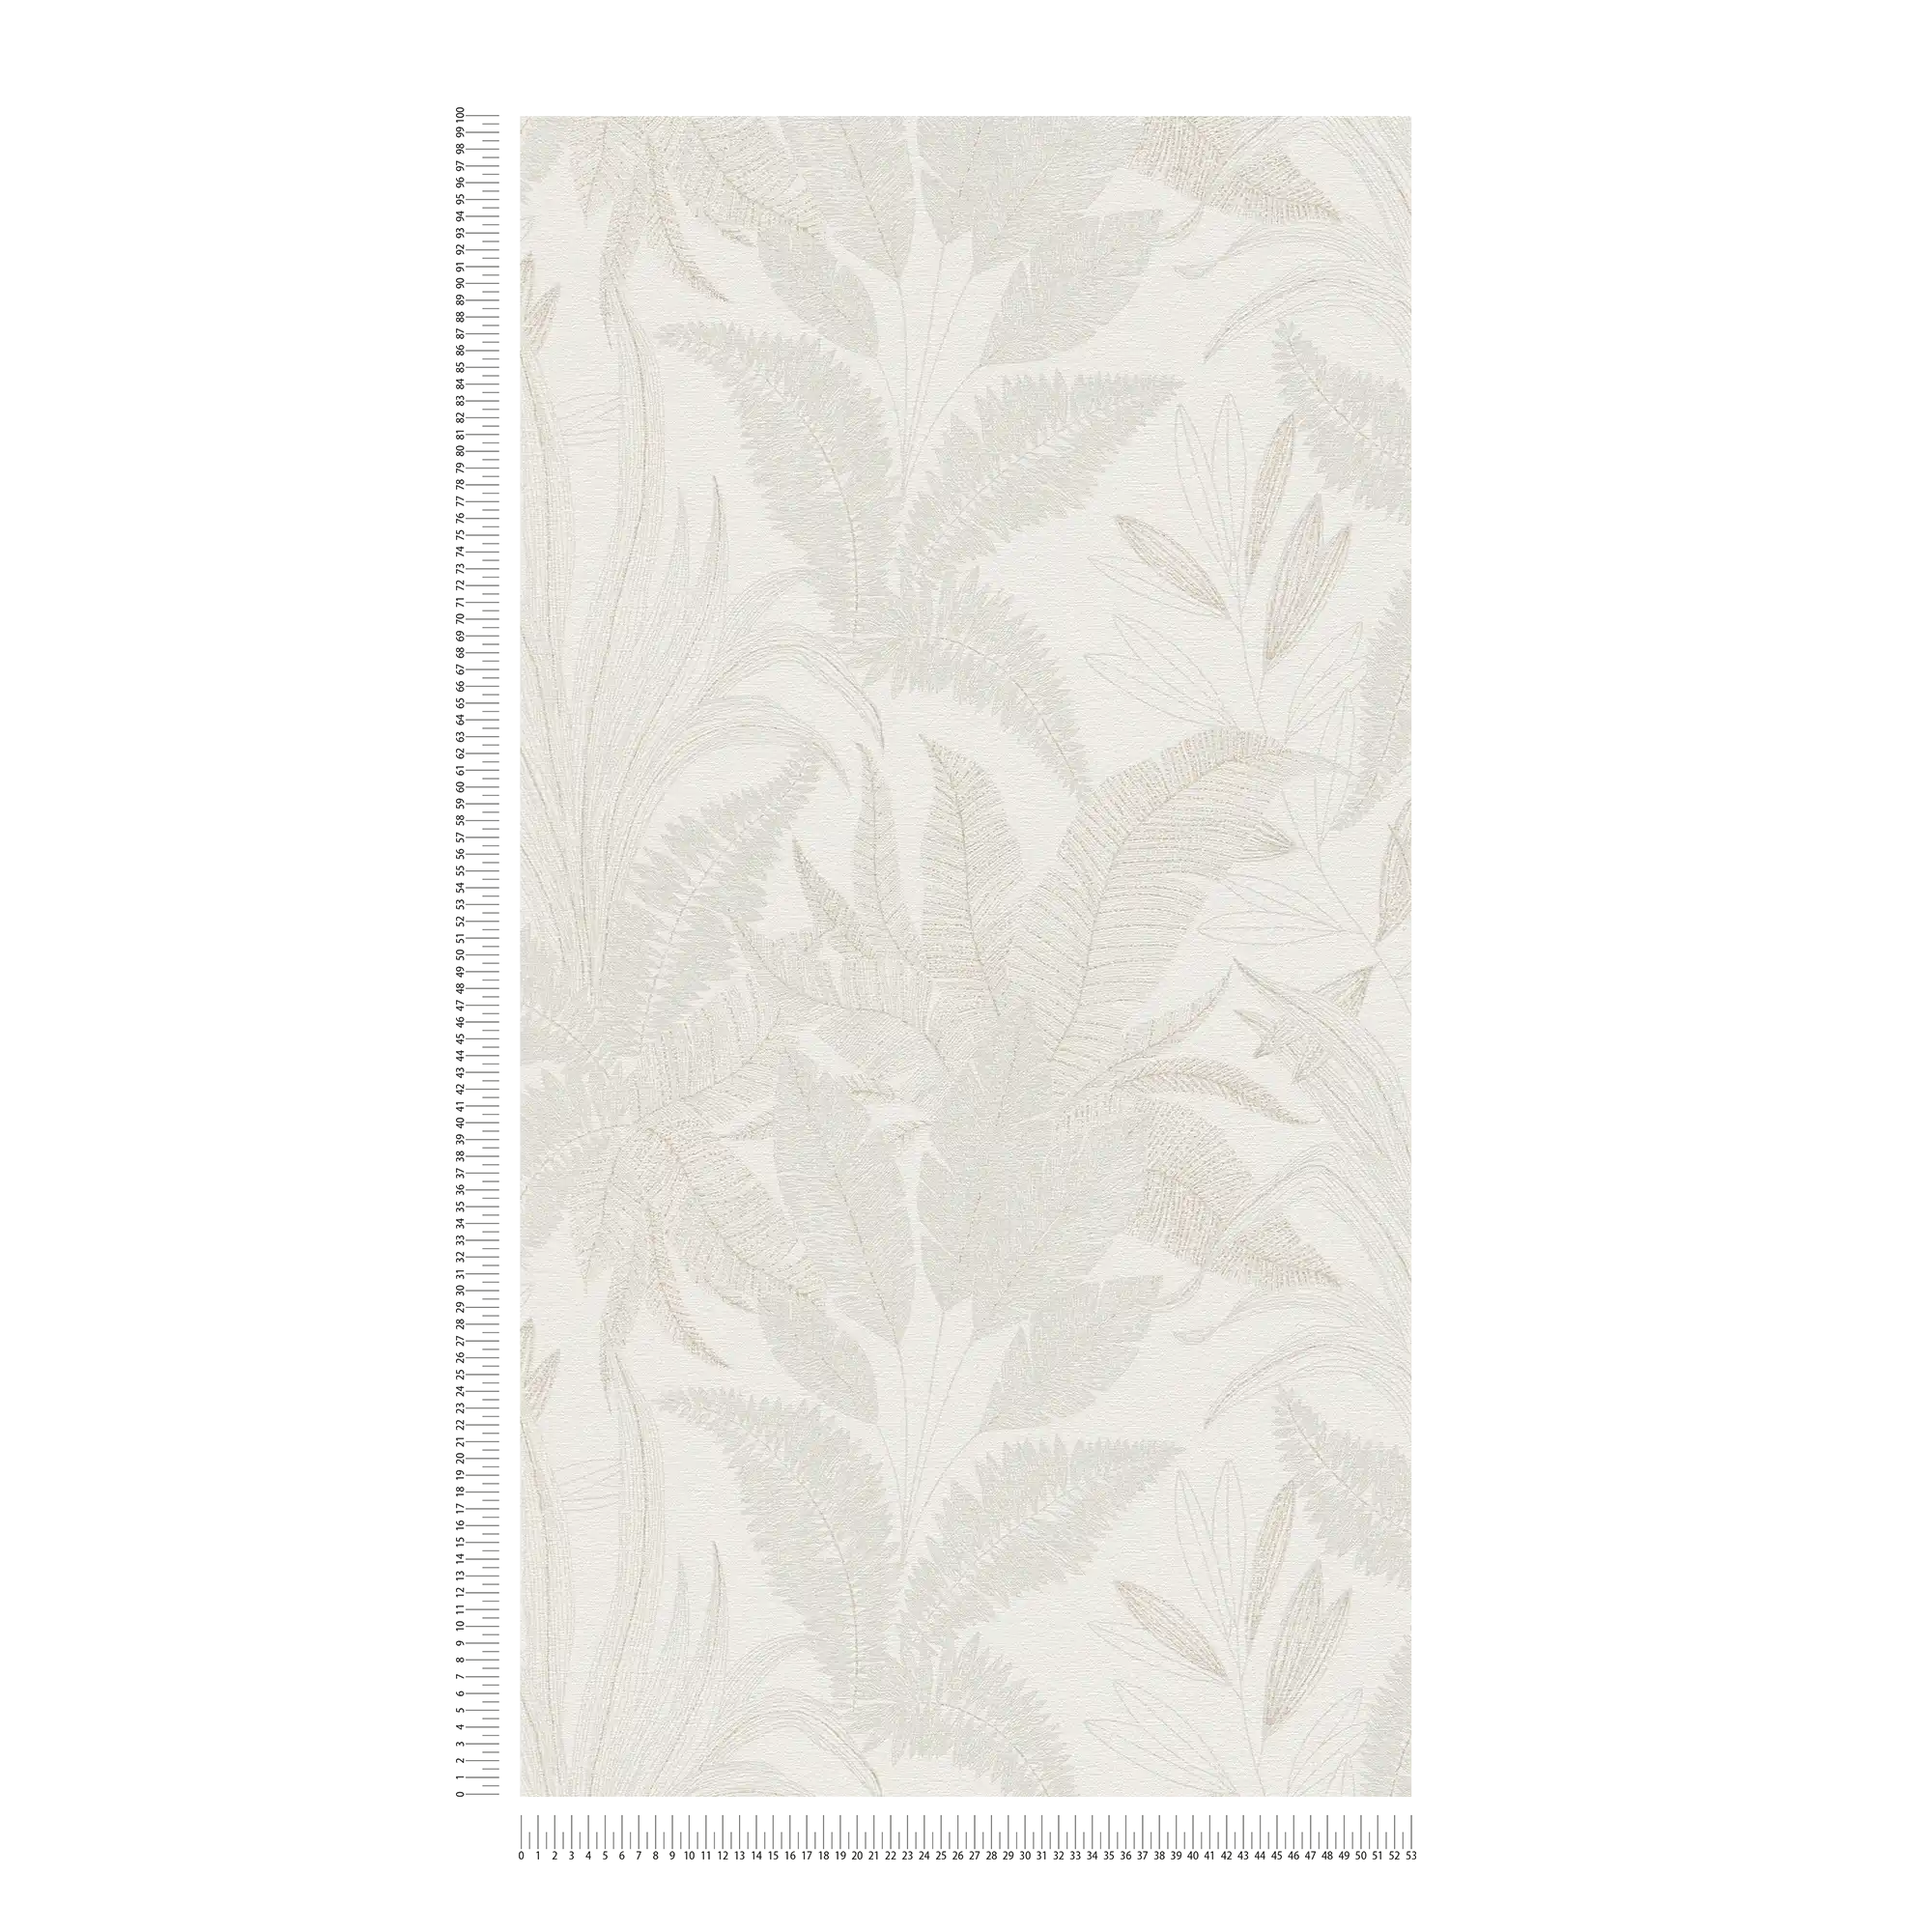             Bloemrijkvliesbehang met bladmotief in zachte kleuren - crème, beige
        